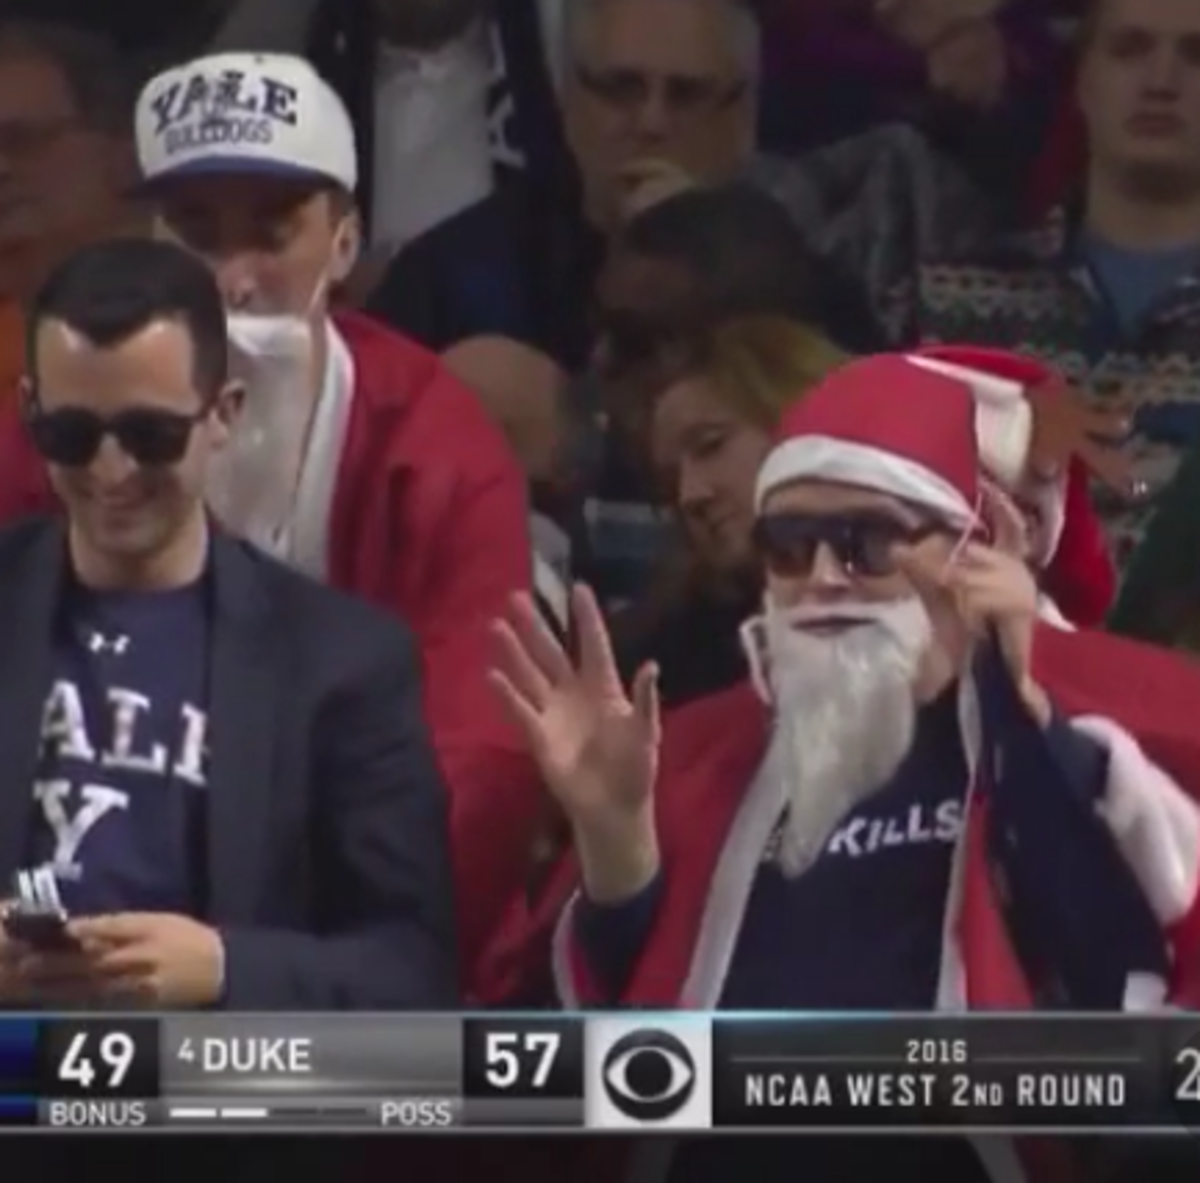 A Yale fan dressed up as Santa.